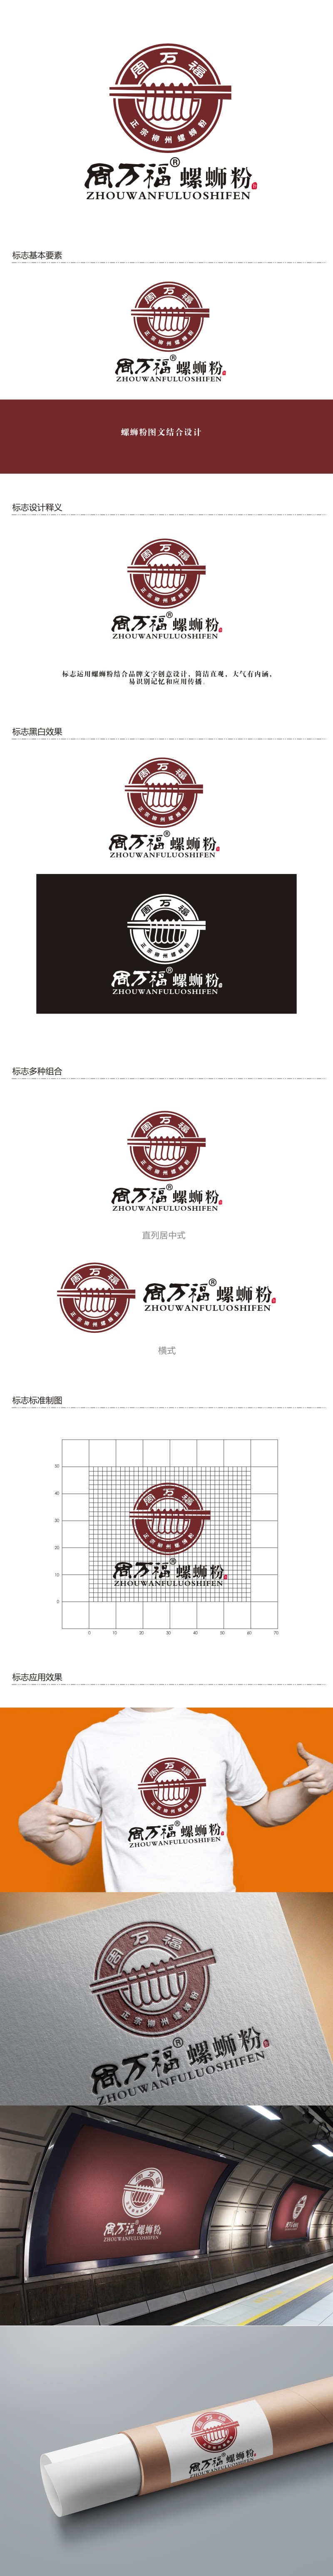 杨占斌的周万福logo设计